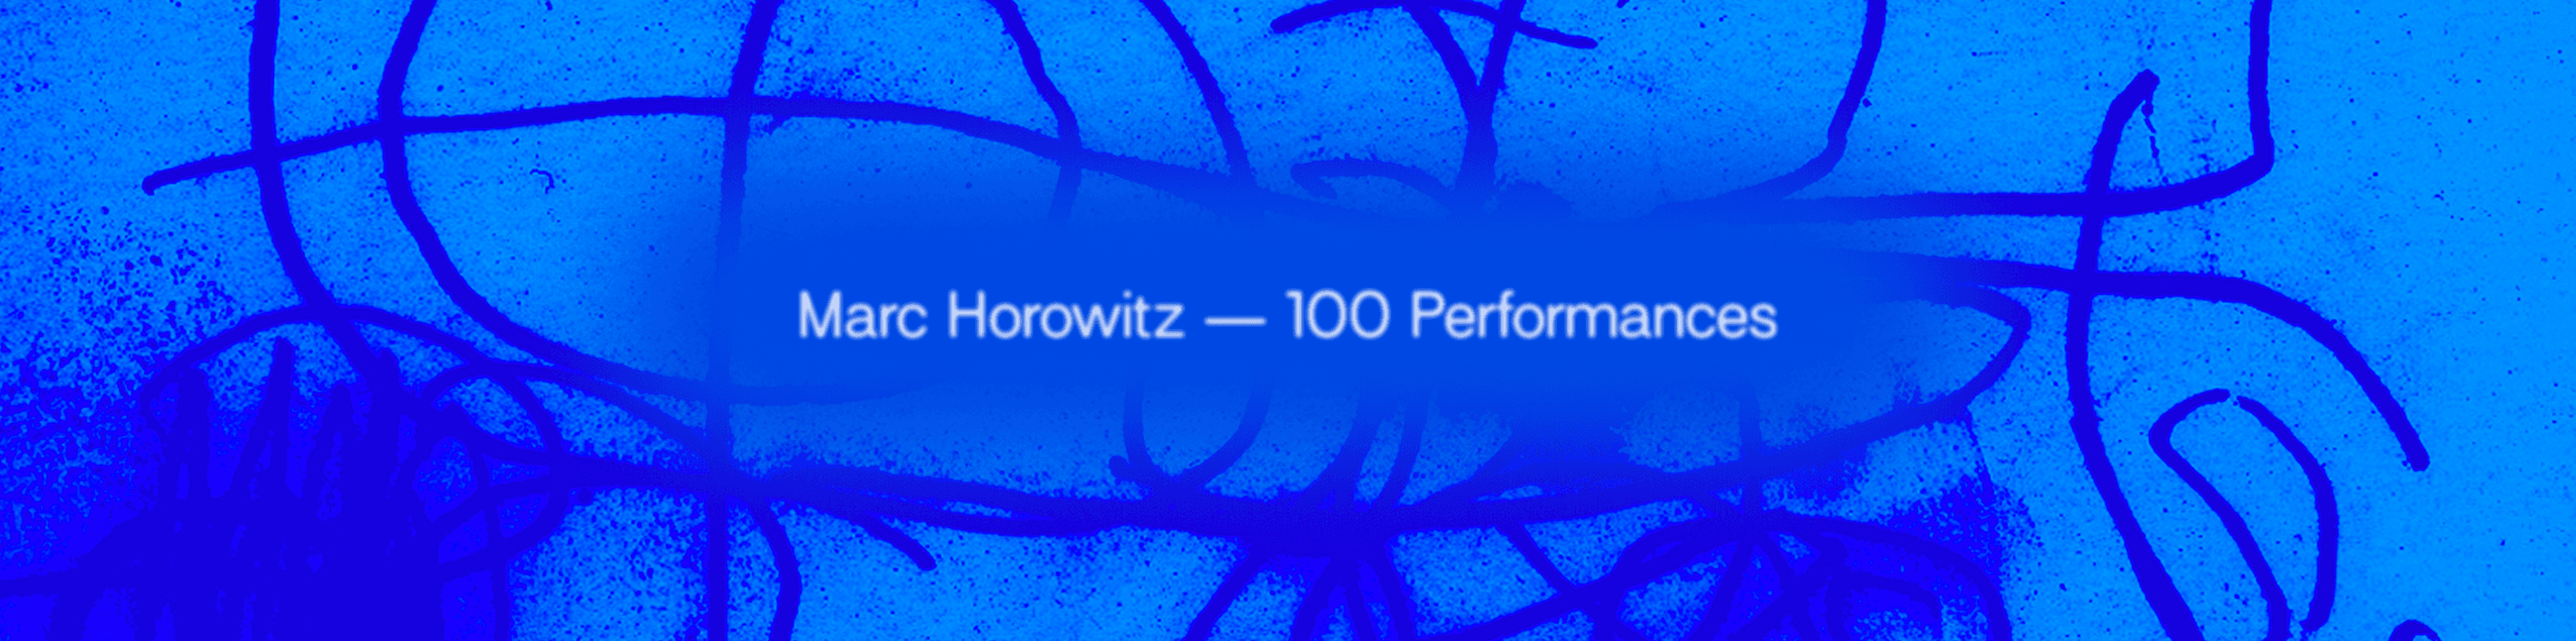 Marc Horowitz - 100 Performances